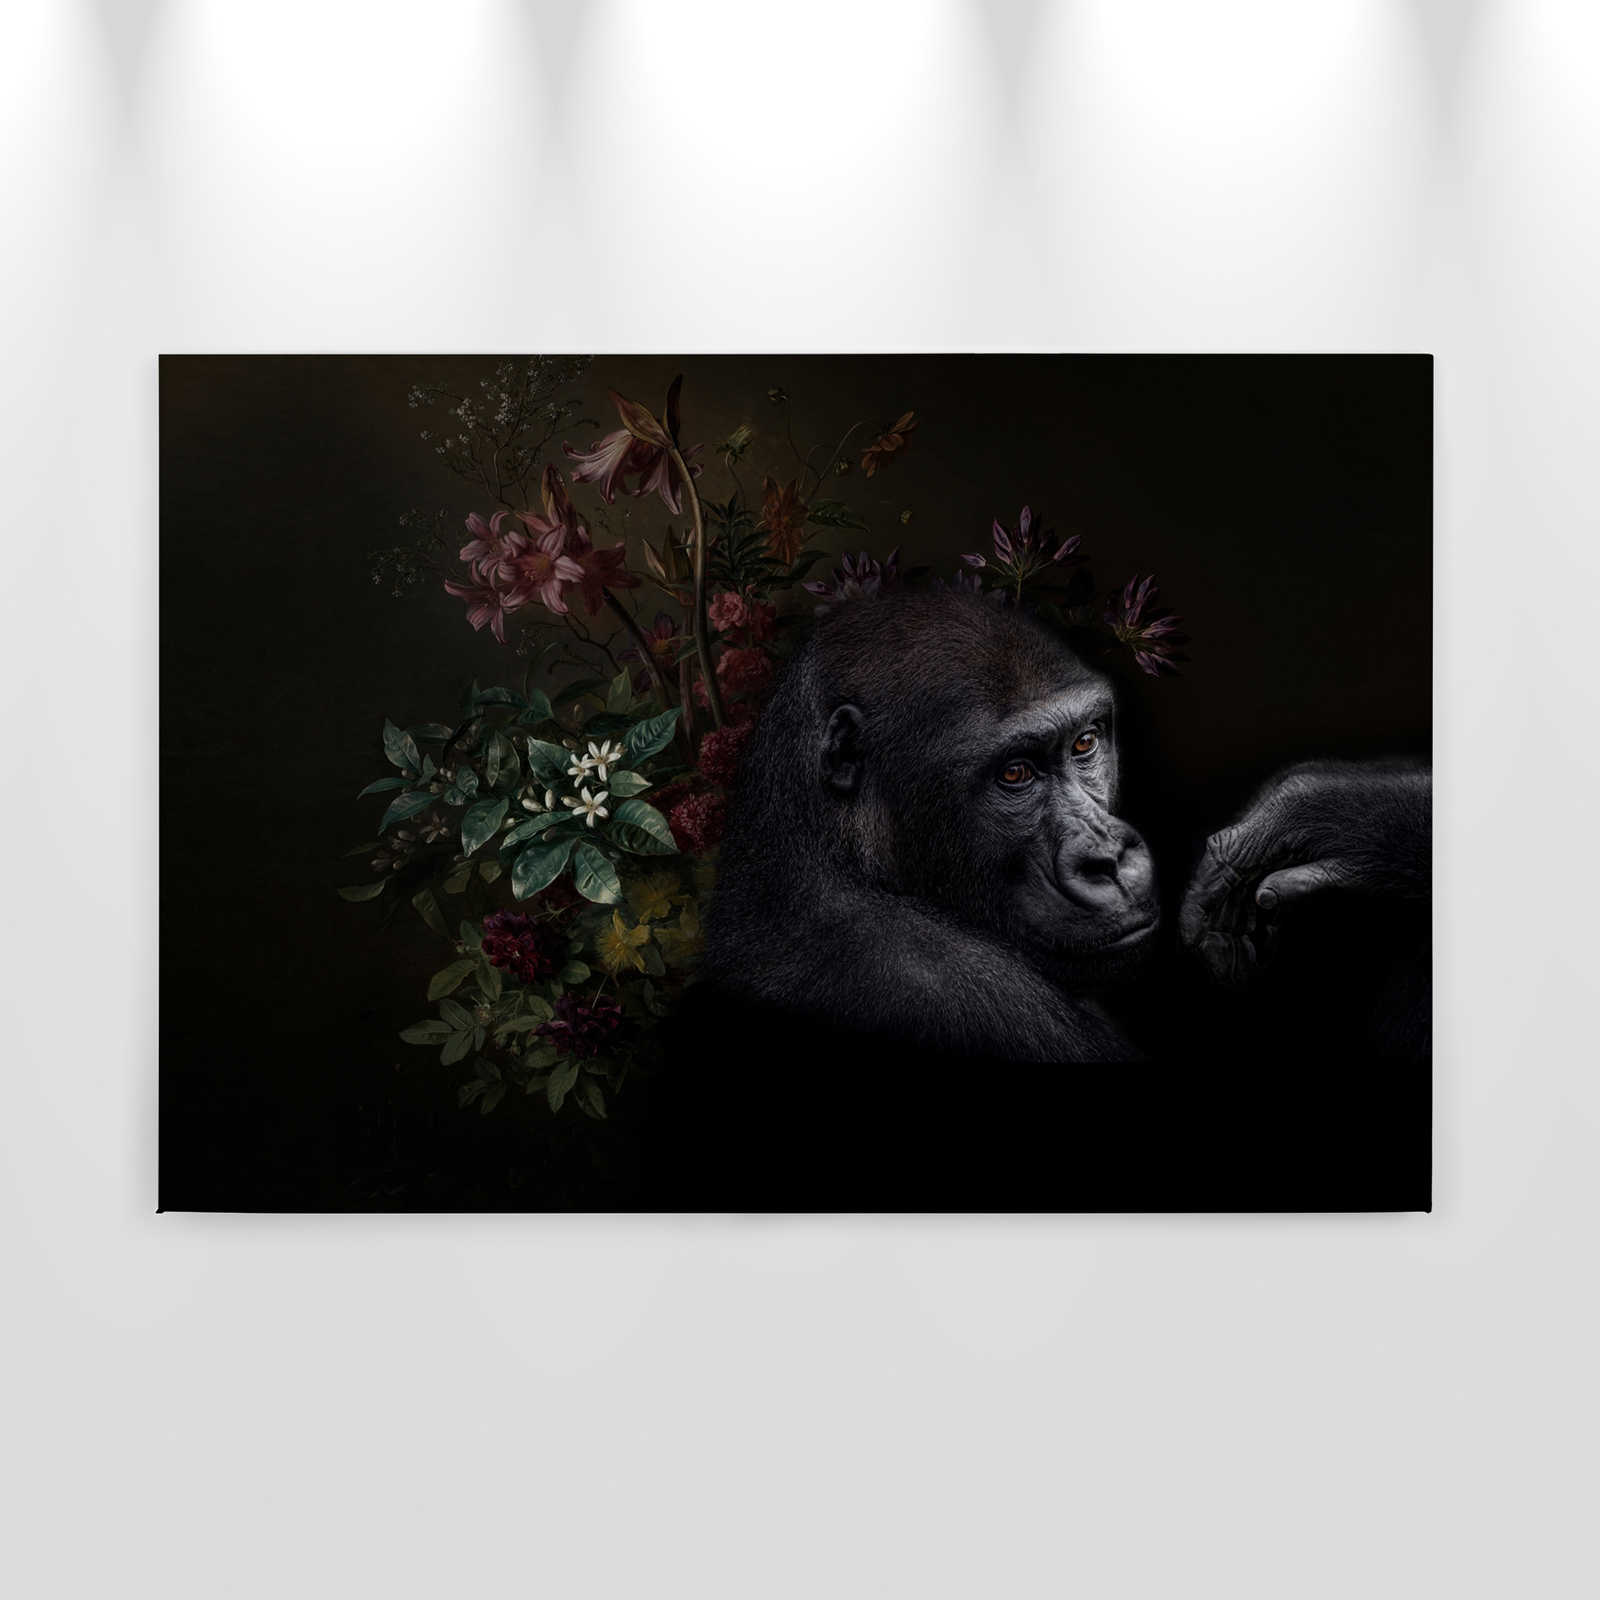             Canvas schilderij Gorilla Portret met bloemen - 0,90 m x 0,60 m
        